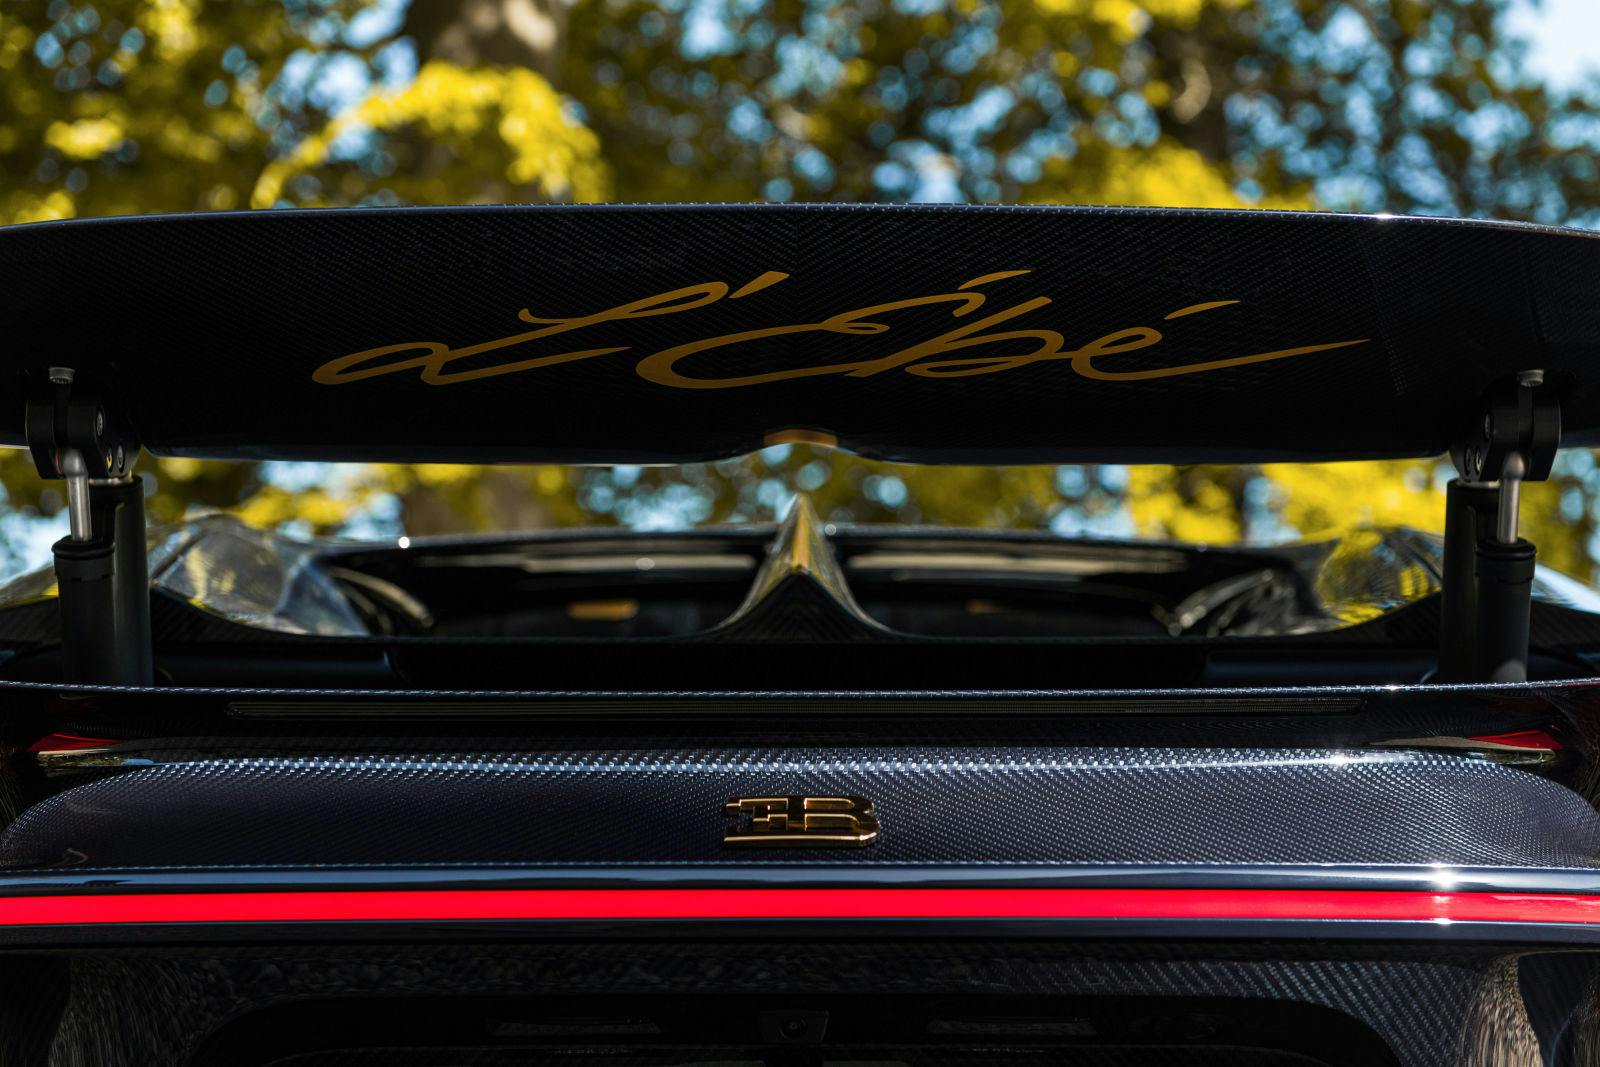 The L’Ébé signature, a dedication to Ettore’s Bugatti daughter. 